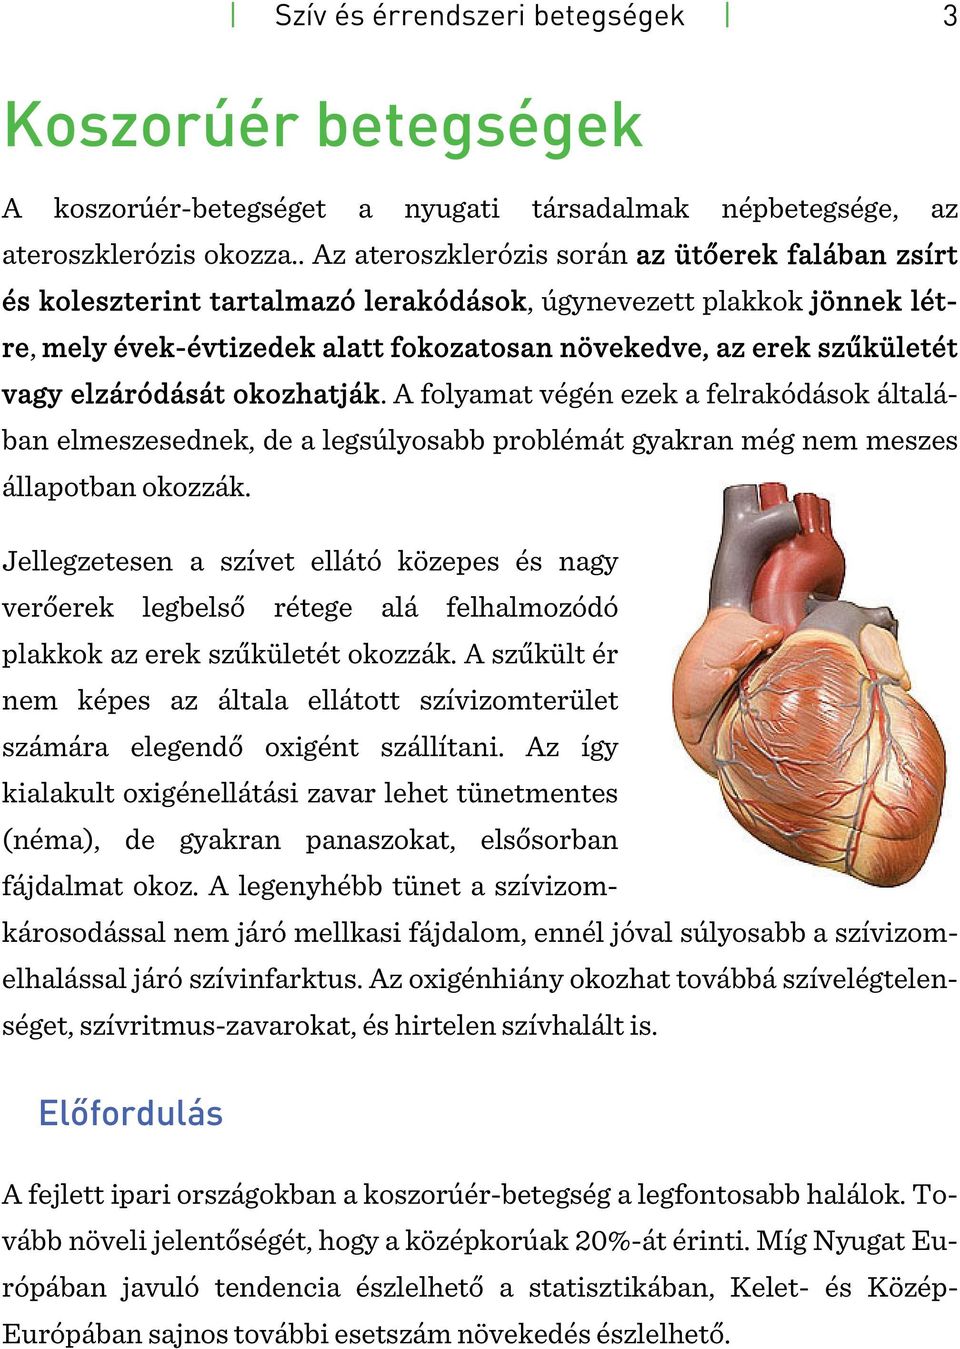 Szív- és érrendszeri betegségek 2. – Szív koszorúér szűkület